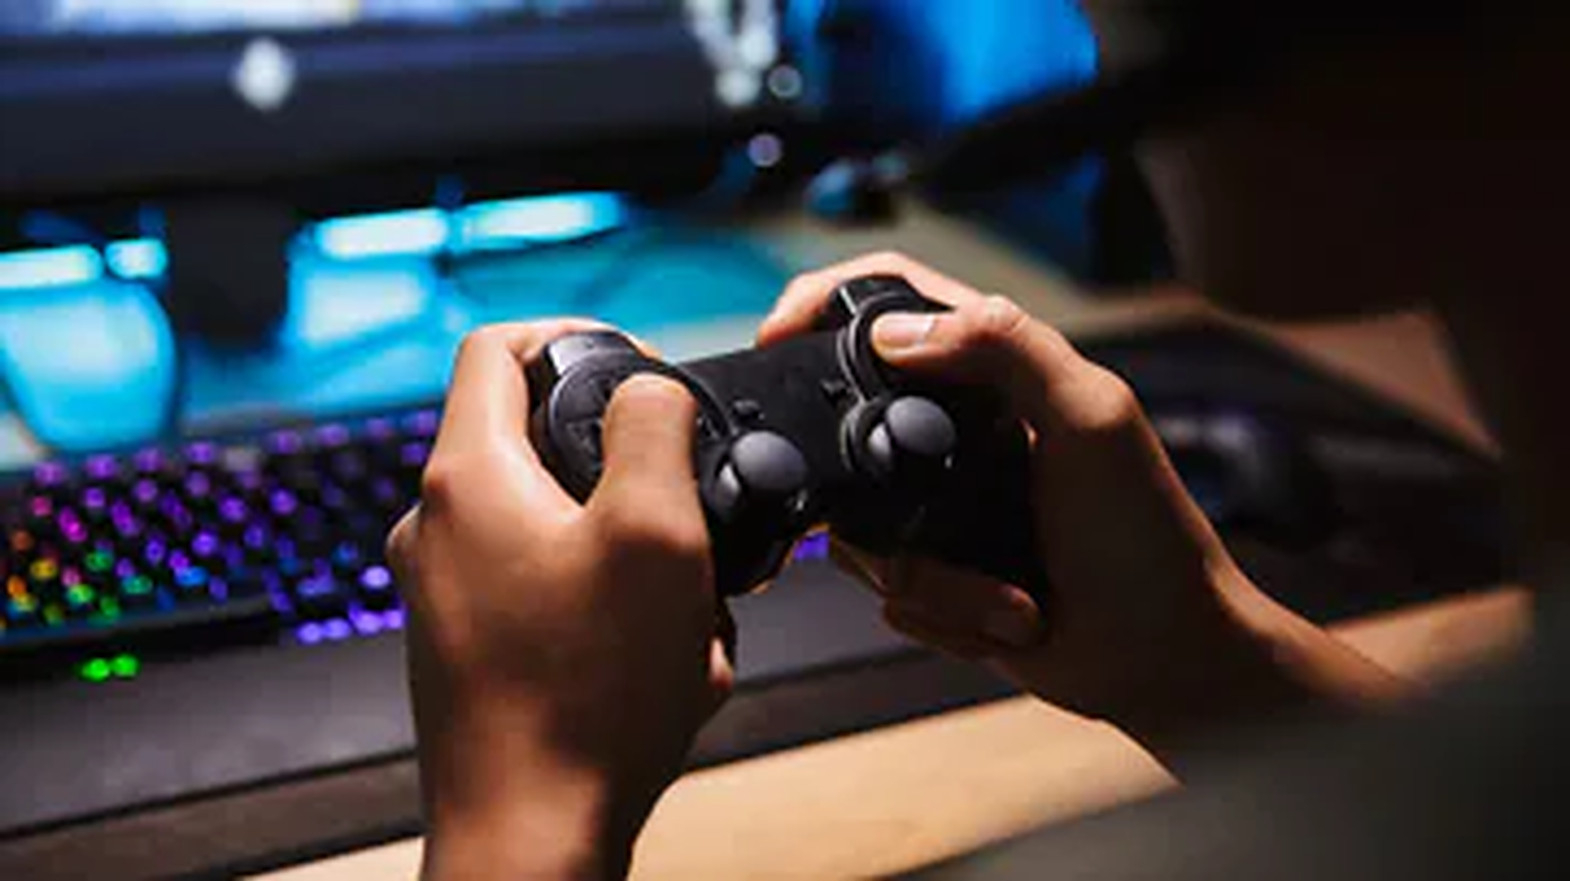 Jocurile video de acțiune stimulează activitatea cerebrală și abilitățile de luare a deciziilor, dar trebuie jucate cu moderație